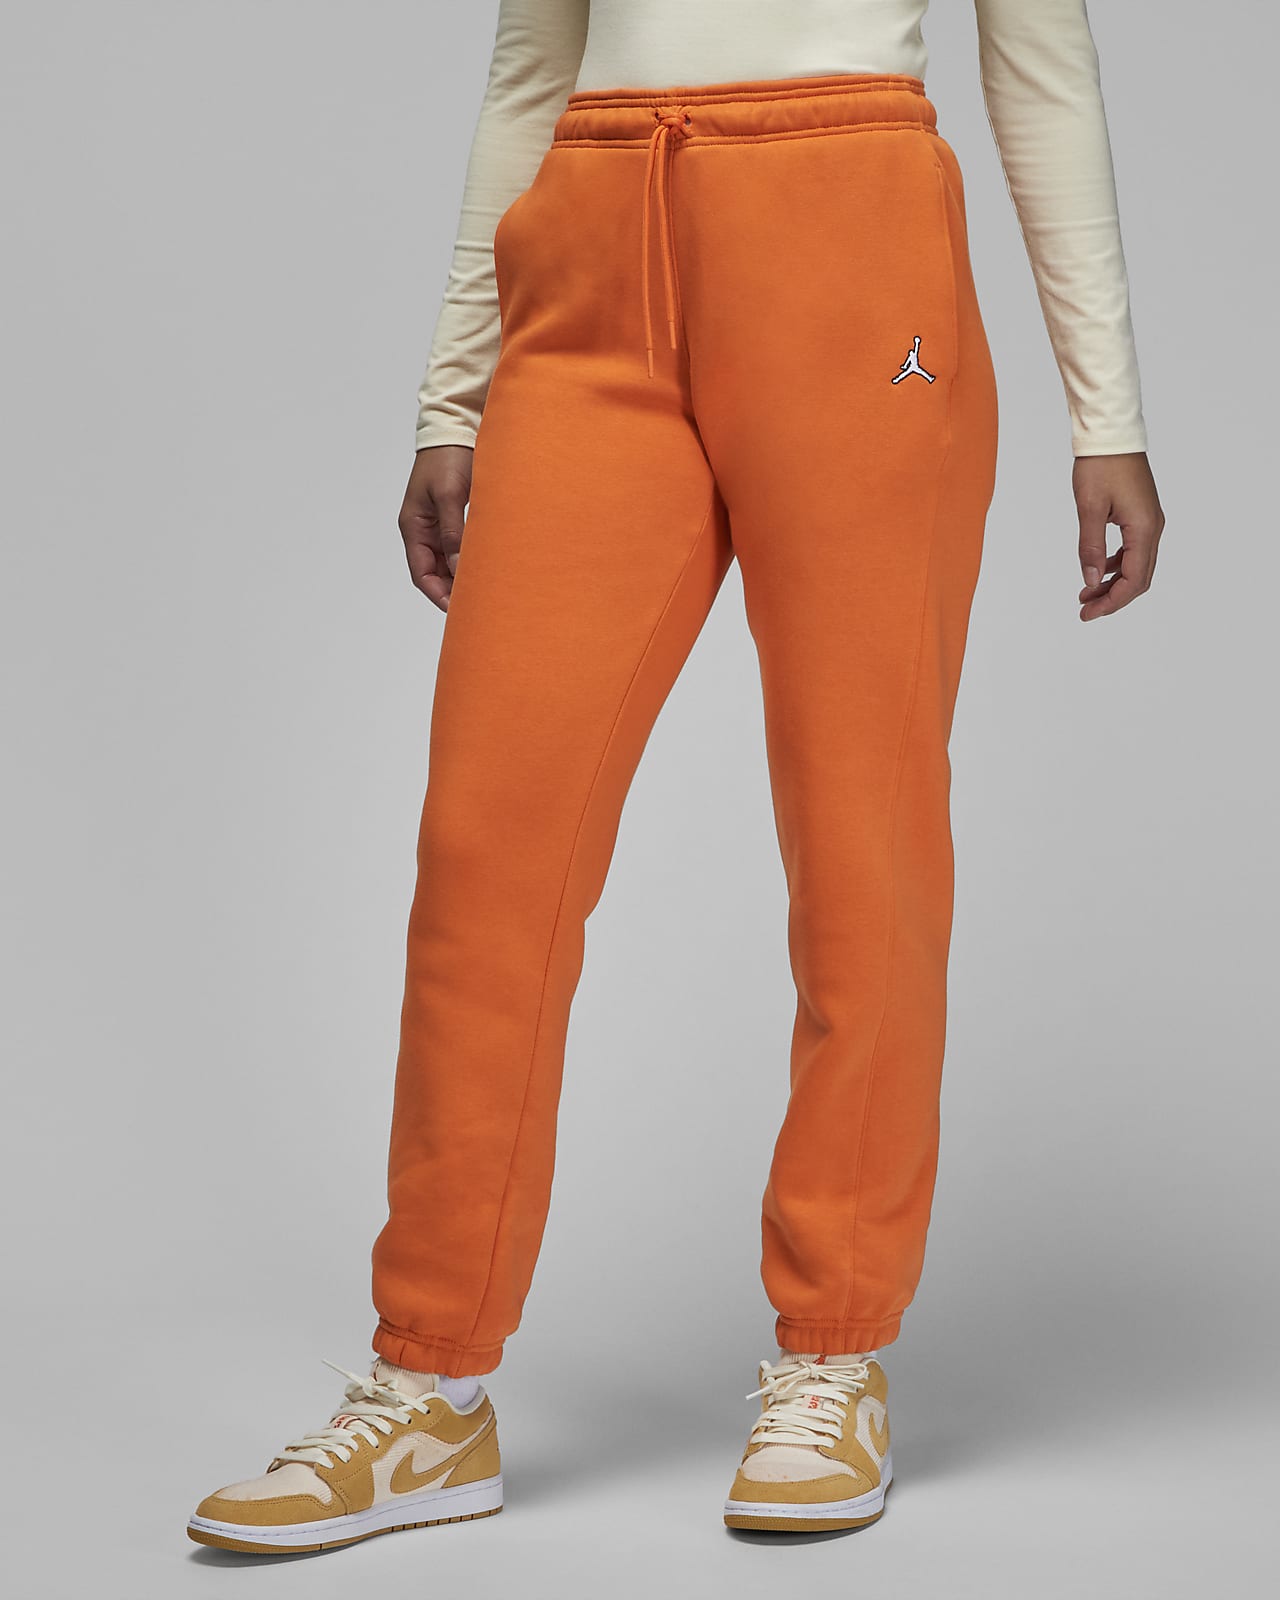 Girls Orange Fleece Track Pants